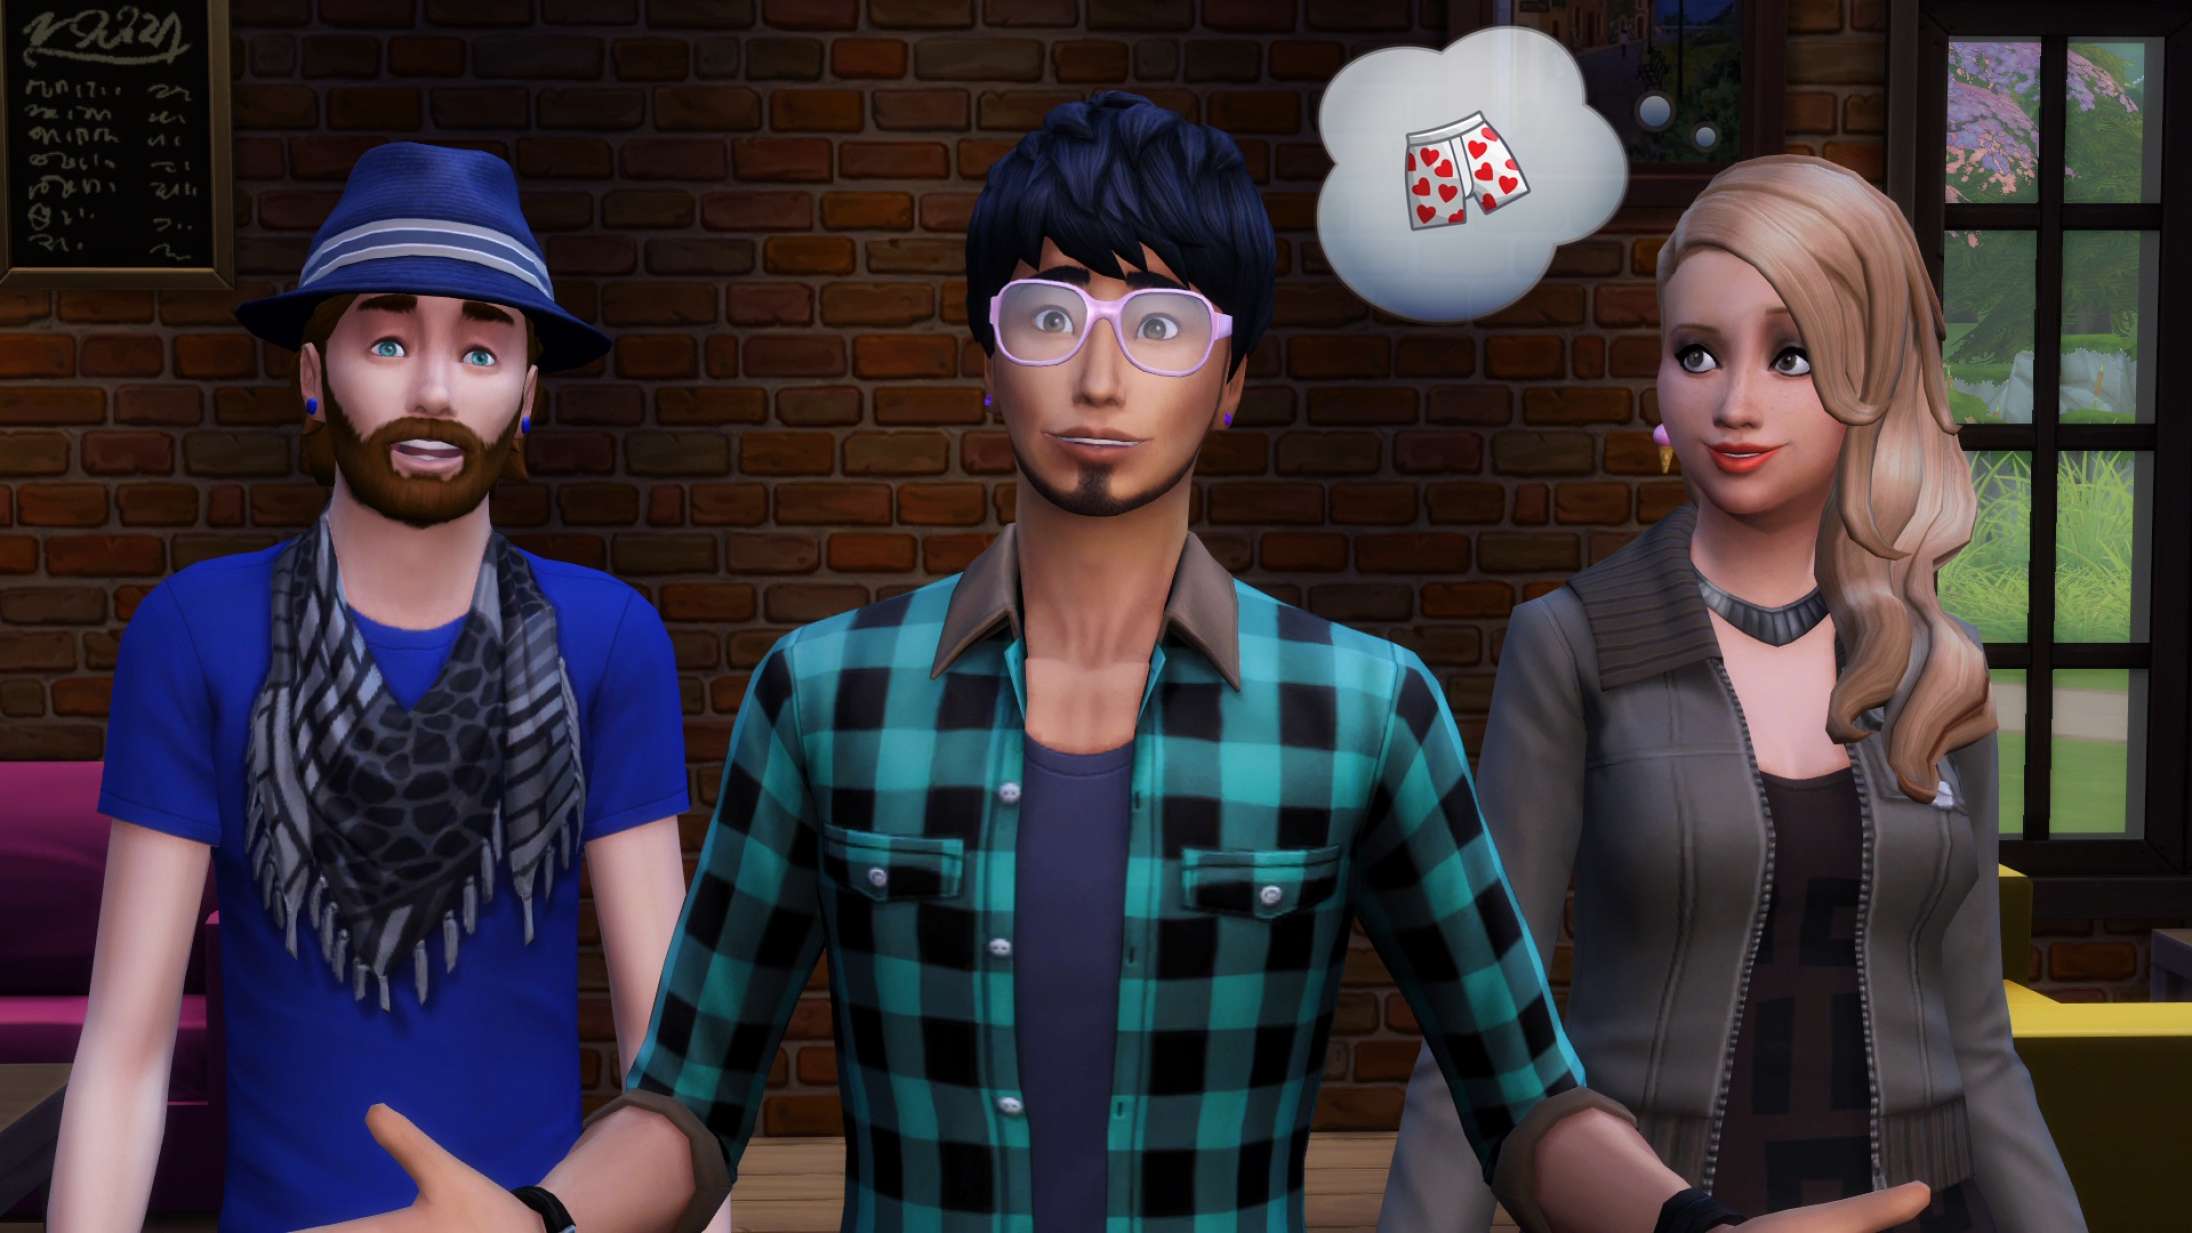 Nu kan du spille ‘The Sims 4’ helt gratis